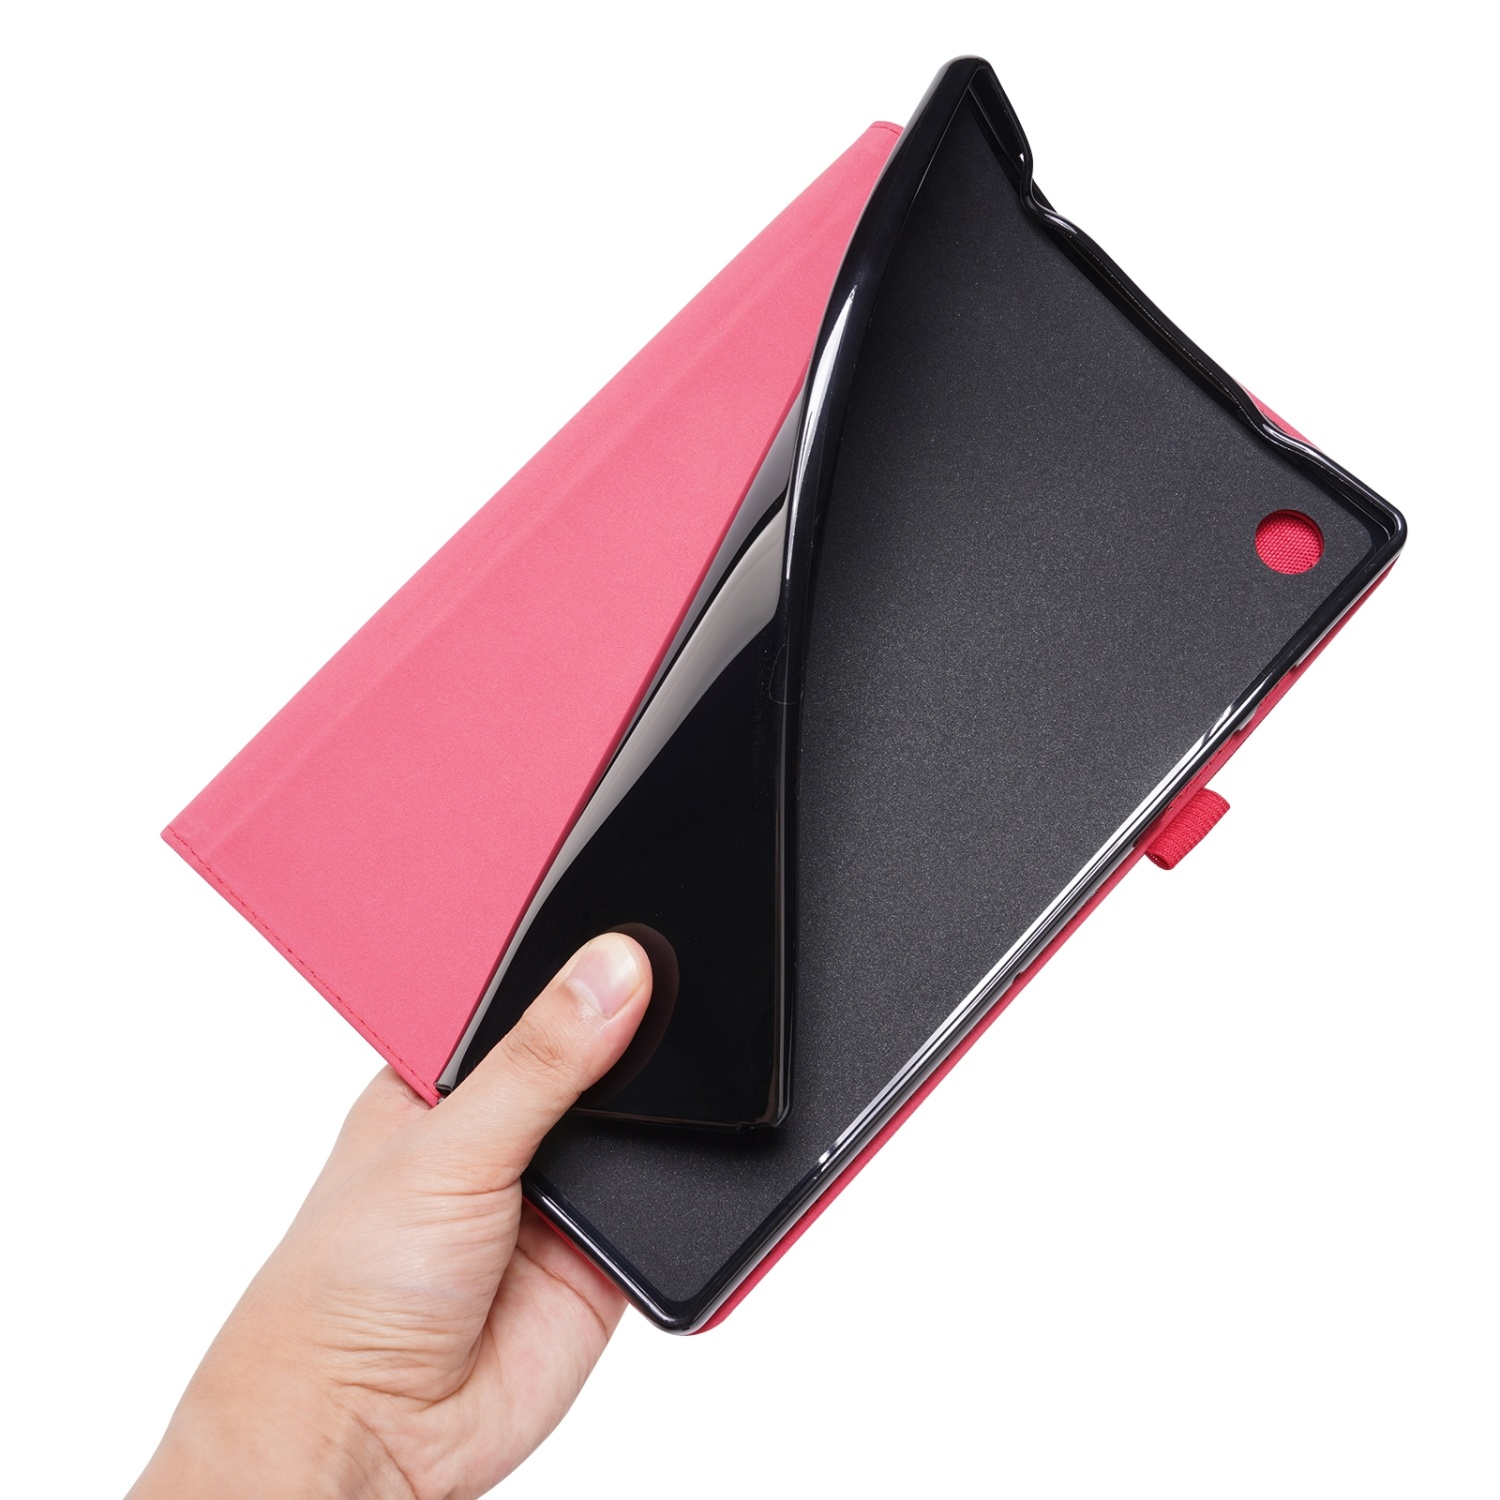 Samsung Schutzhülle Tablethülle für Rot DESIGN KÖNIG Rose Bookcover Kunstleder,